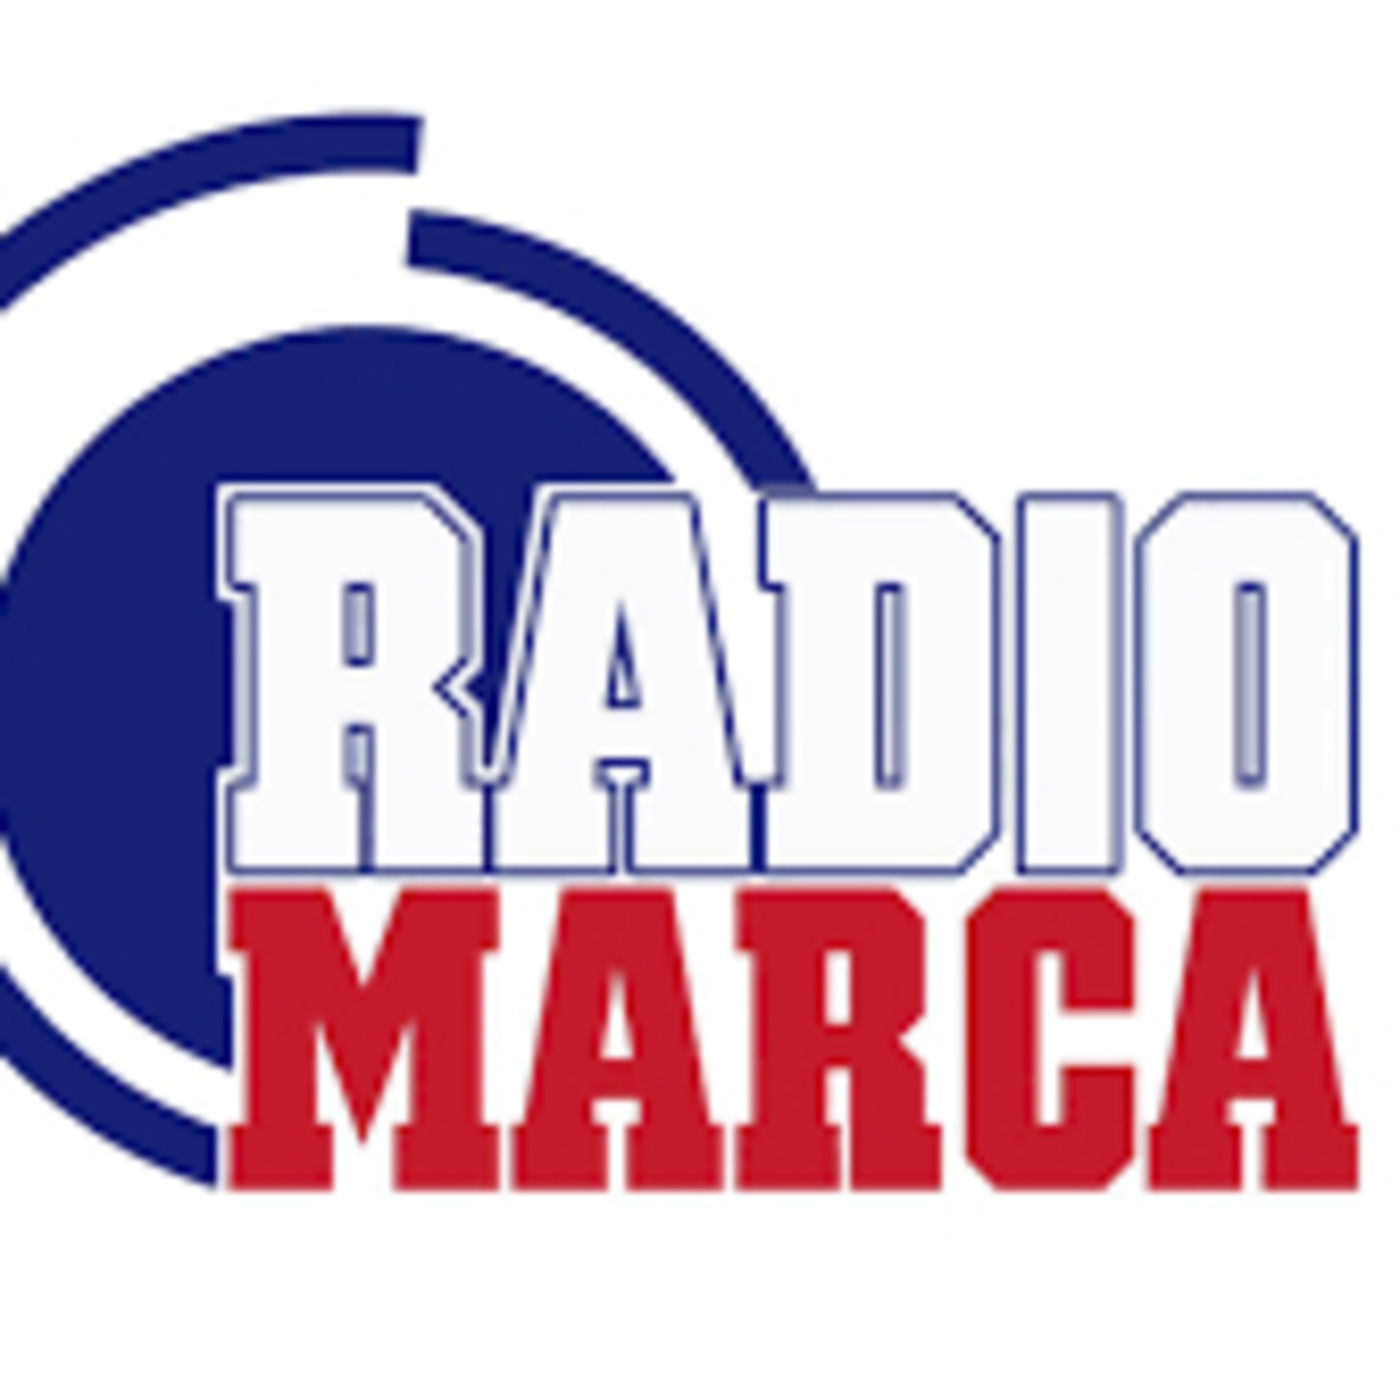 Radio Marca 9 jul 2020, anallizando la actualidad del Valencia CF